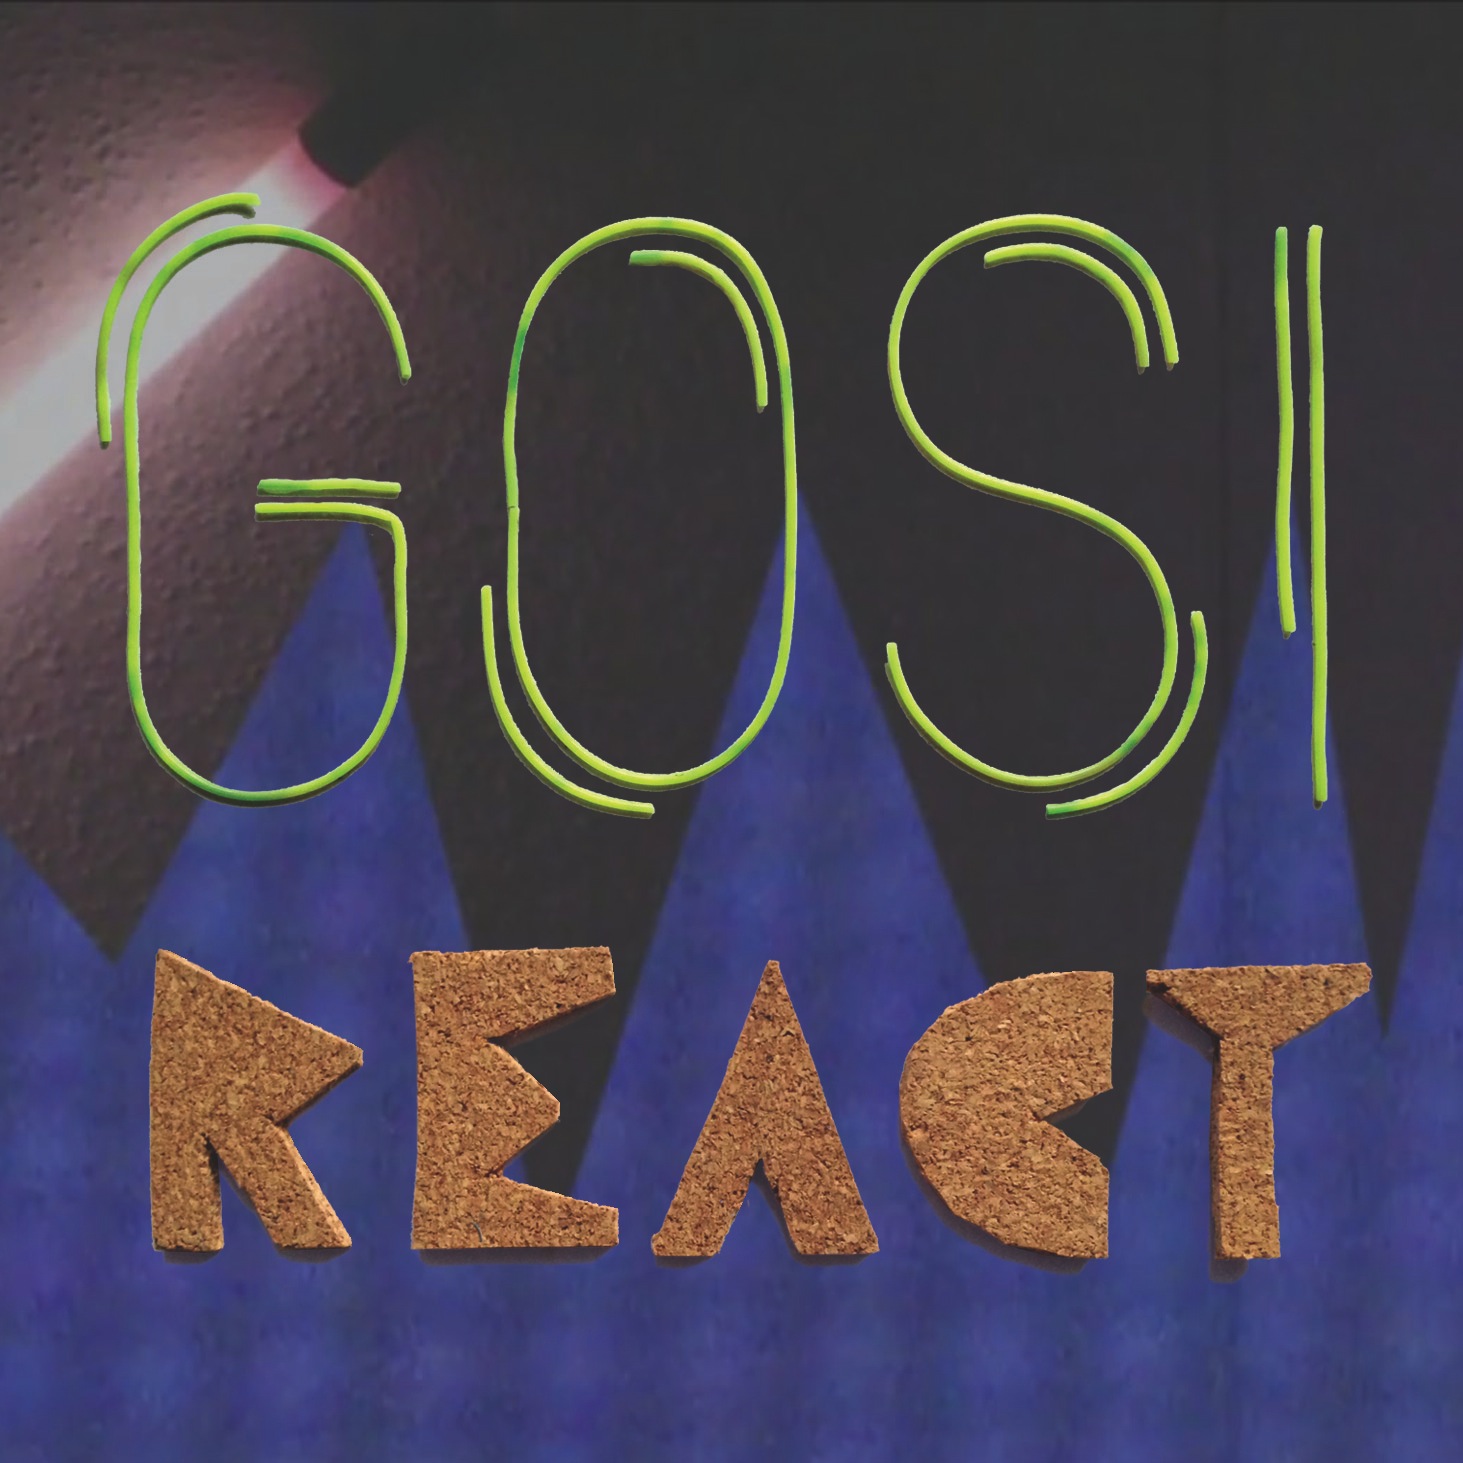 Go to Gosi - React on Spotify!